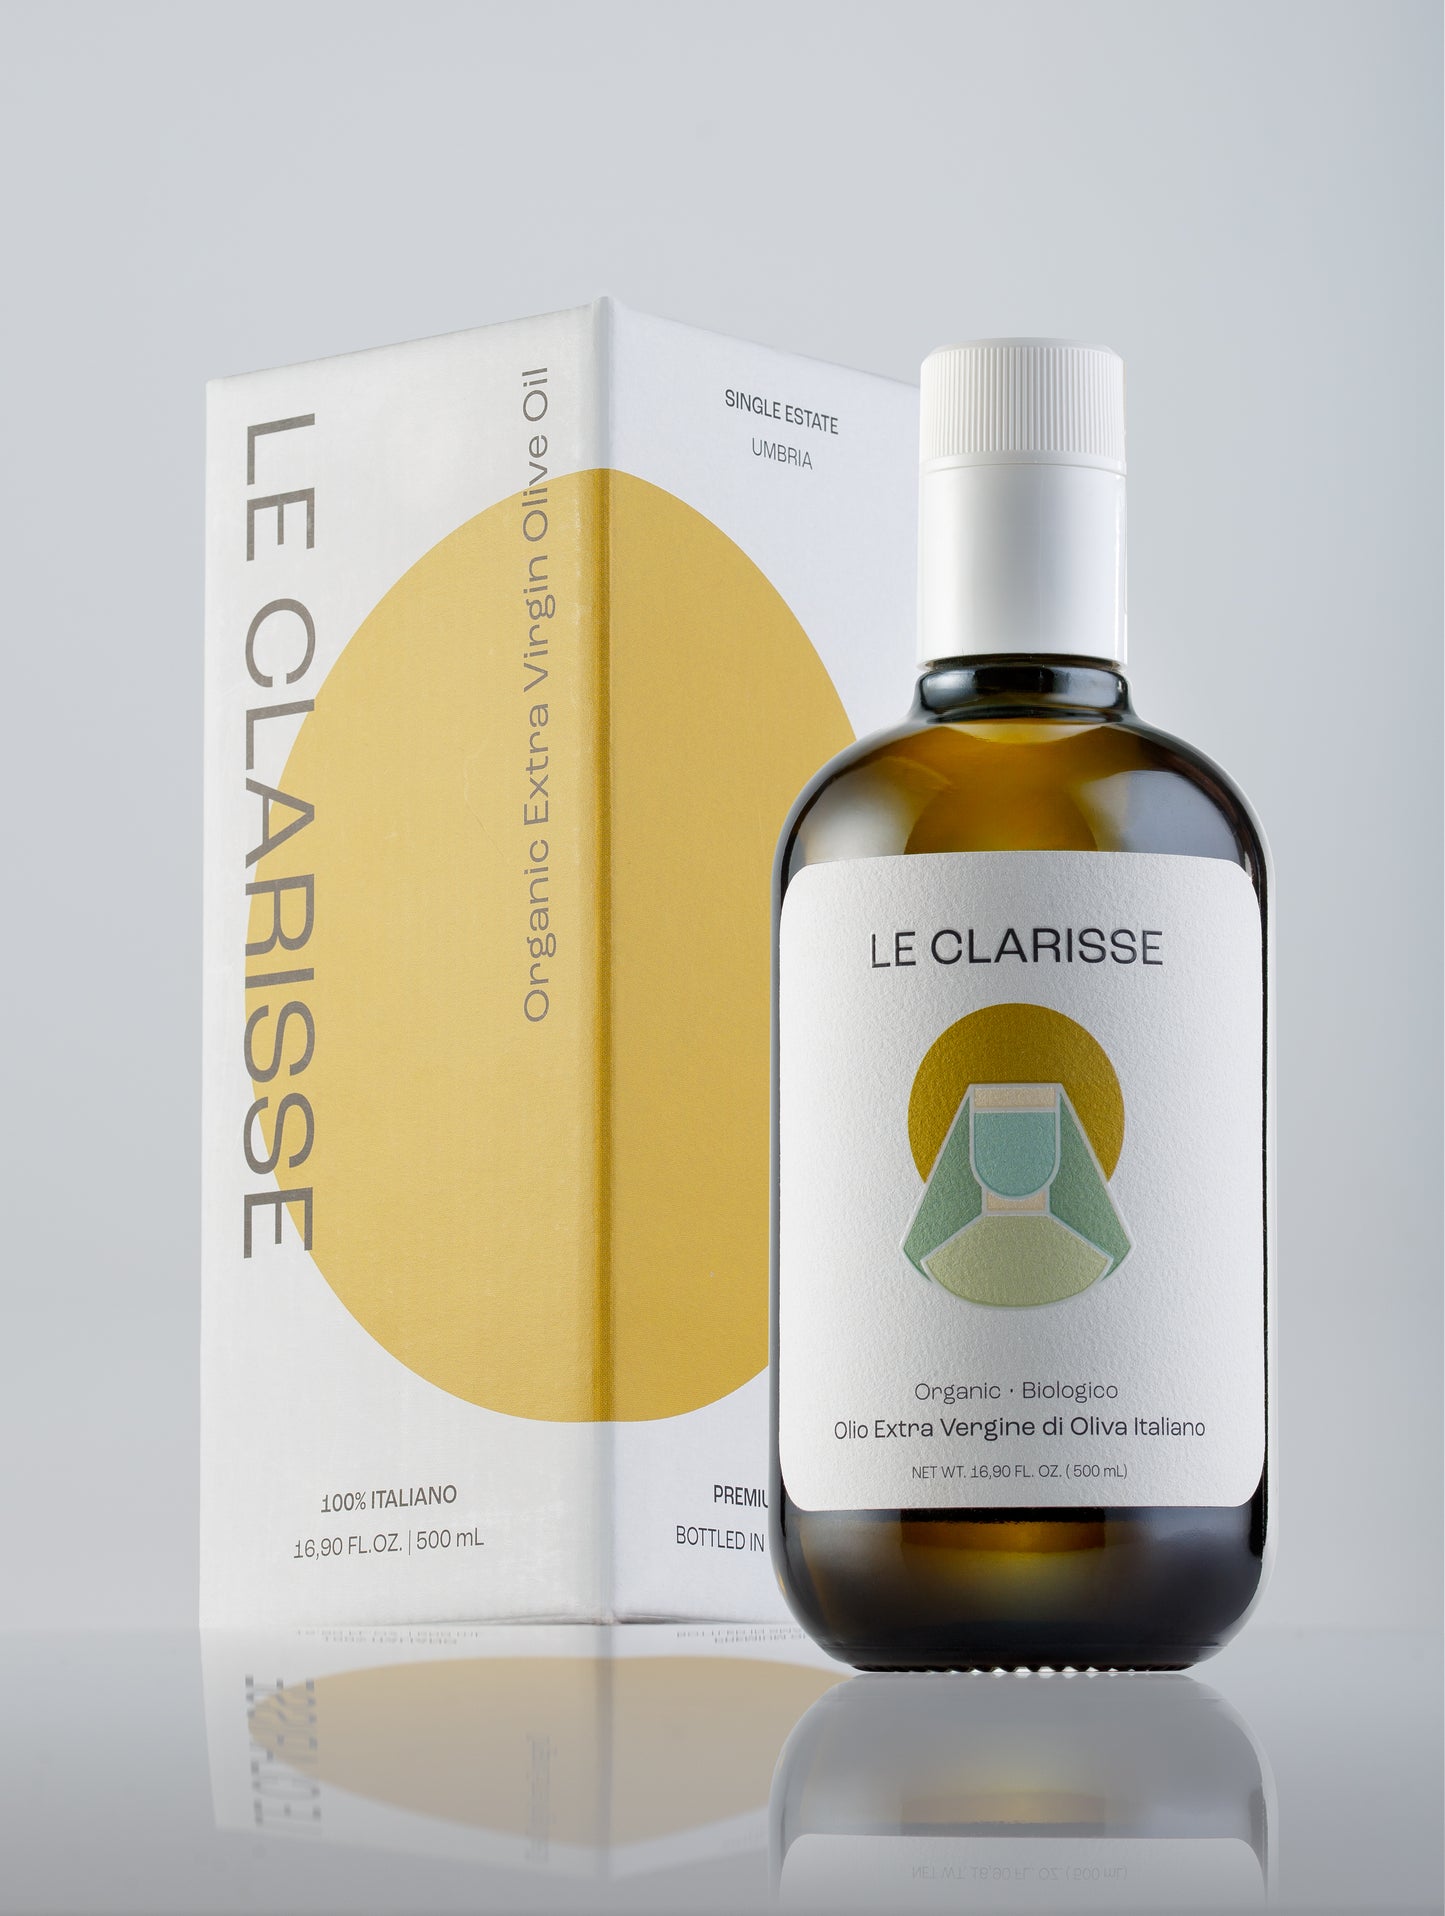 Le Clarisse - Premium Organic EVOO